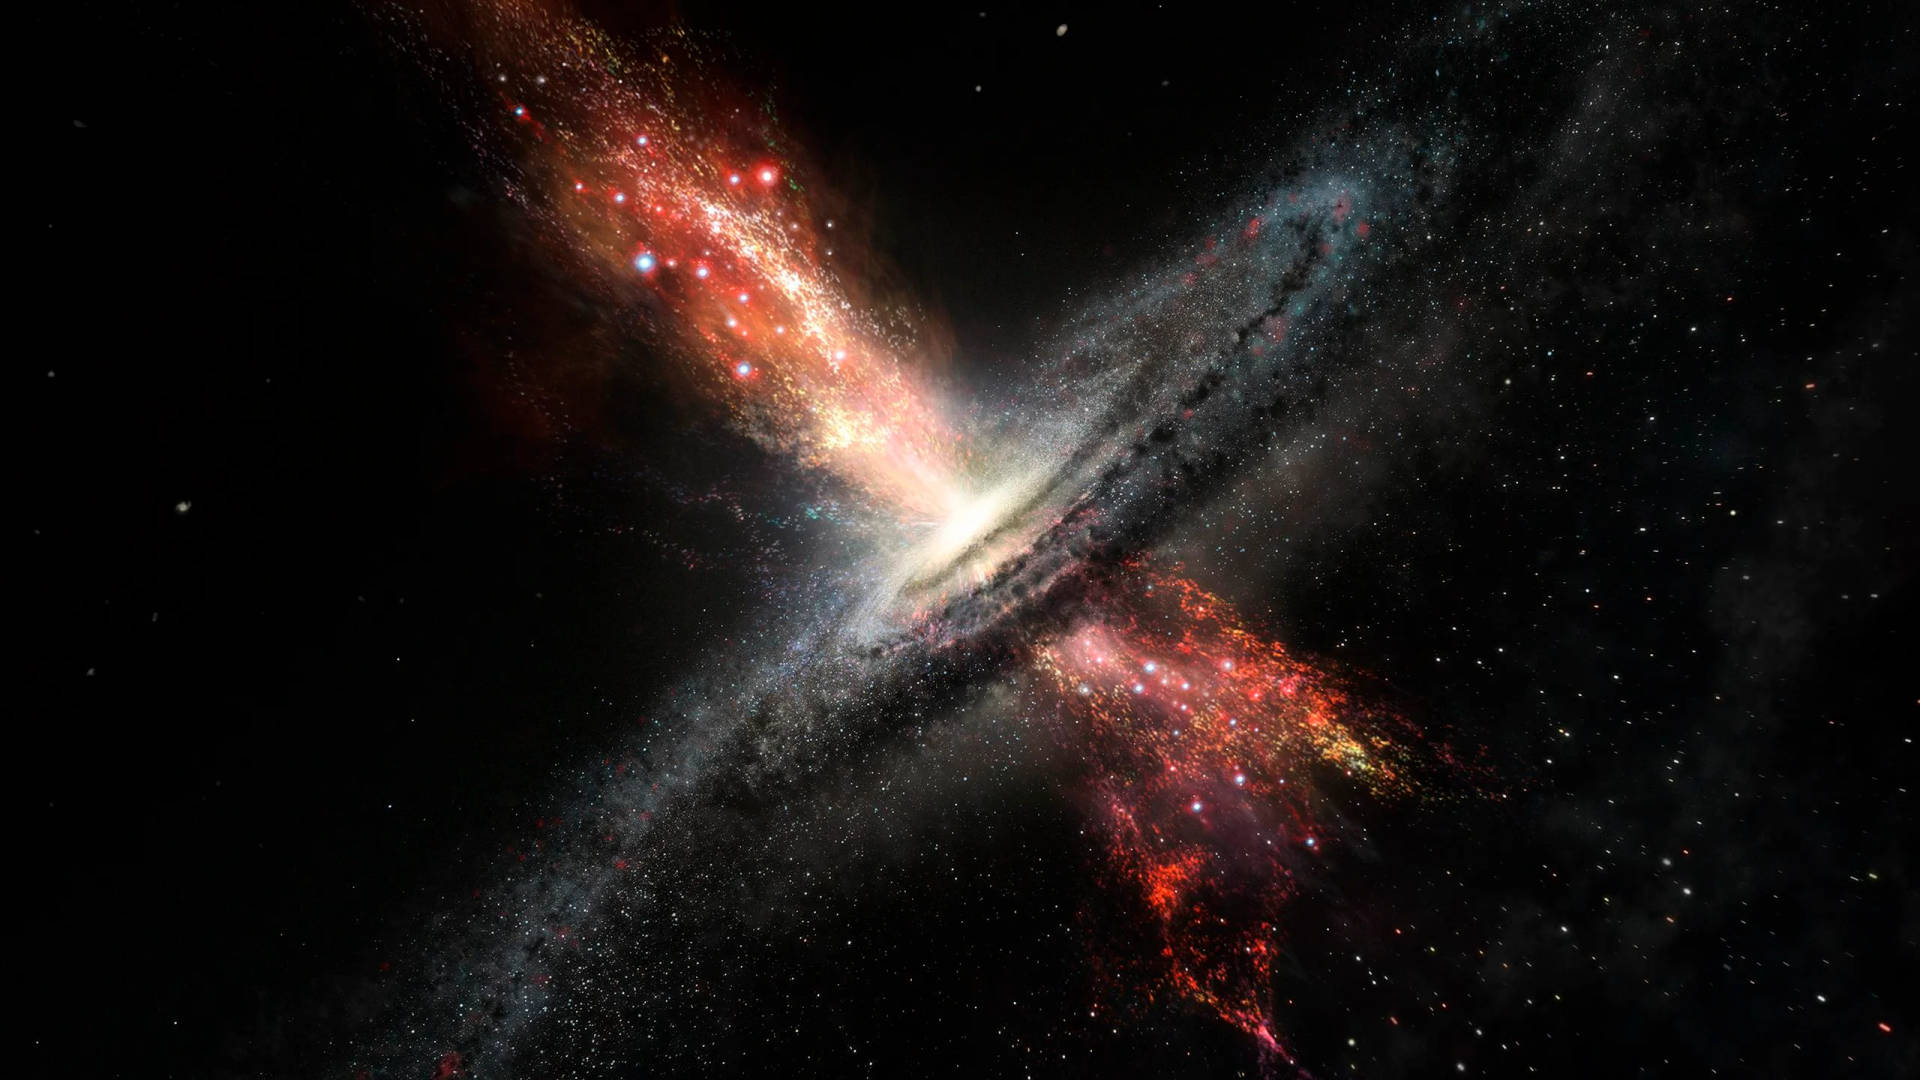 Galaxienkollisionim Weltraum 2560x1440 Wallpaper